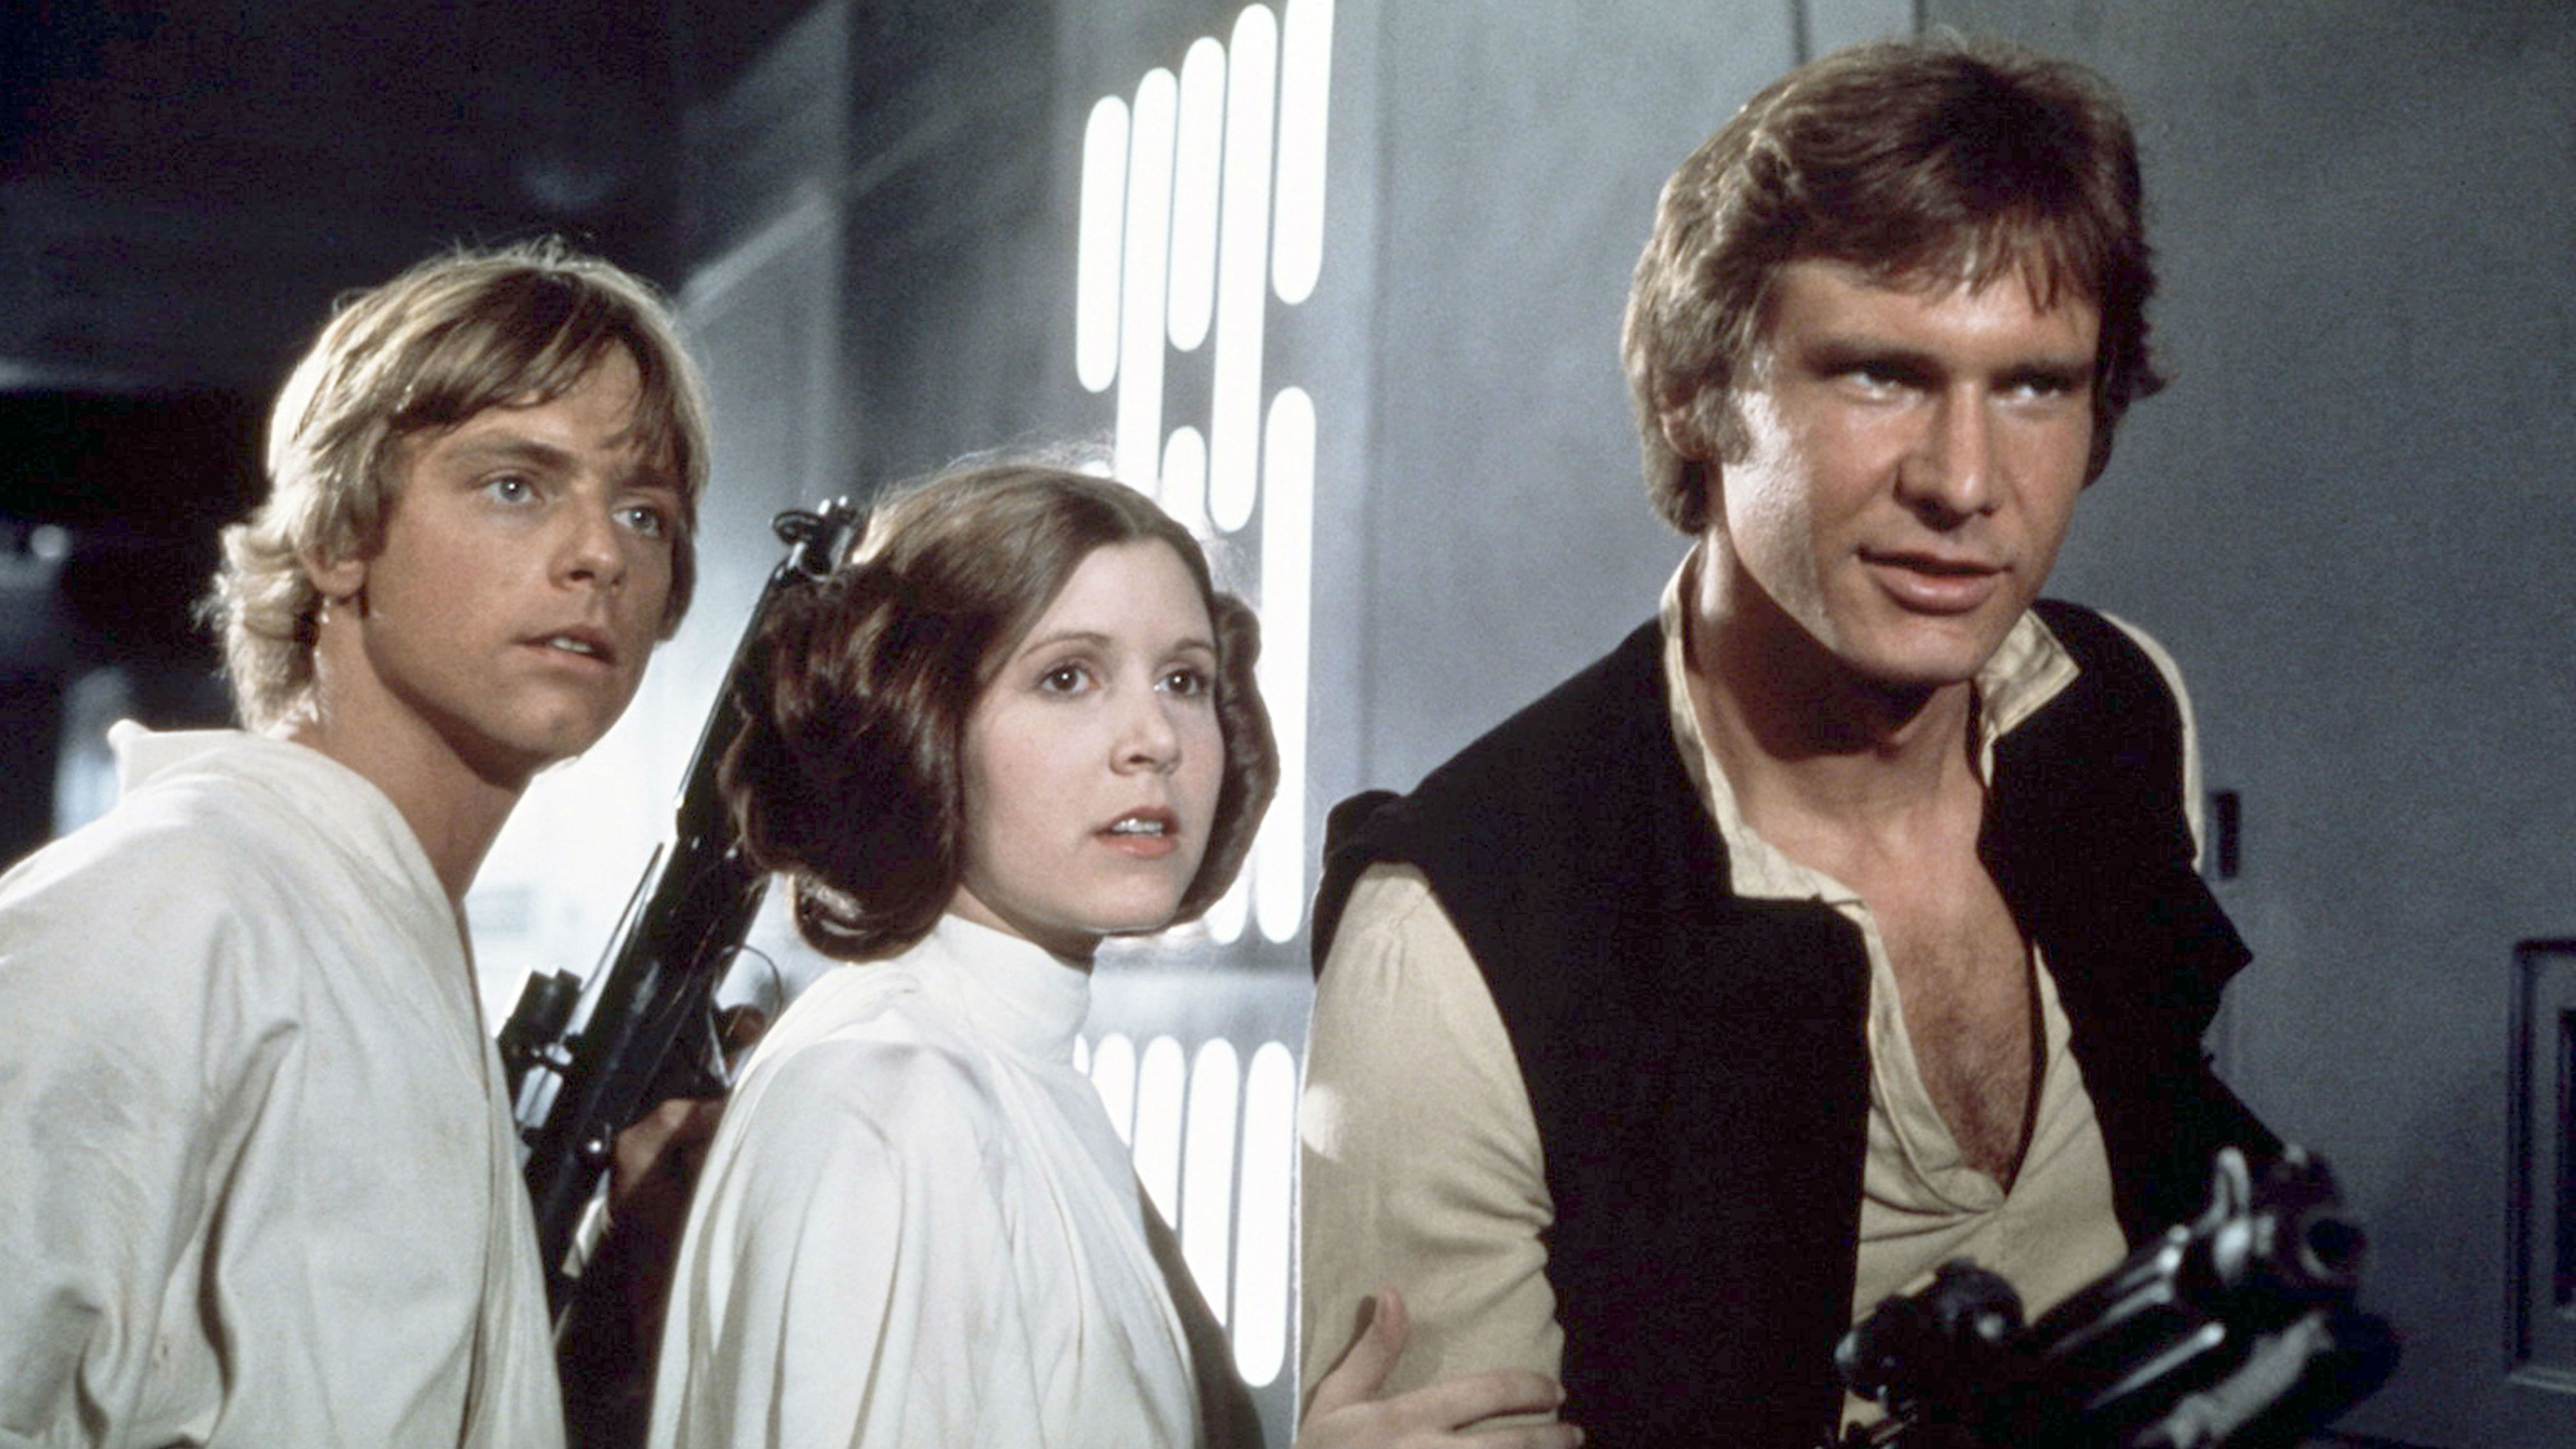 Mark Hamill védelmébe vette az új Star Wars előzetesén zokogó, kicikizett rajongót